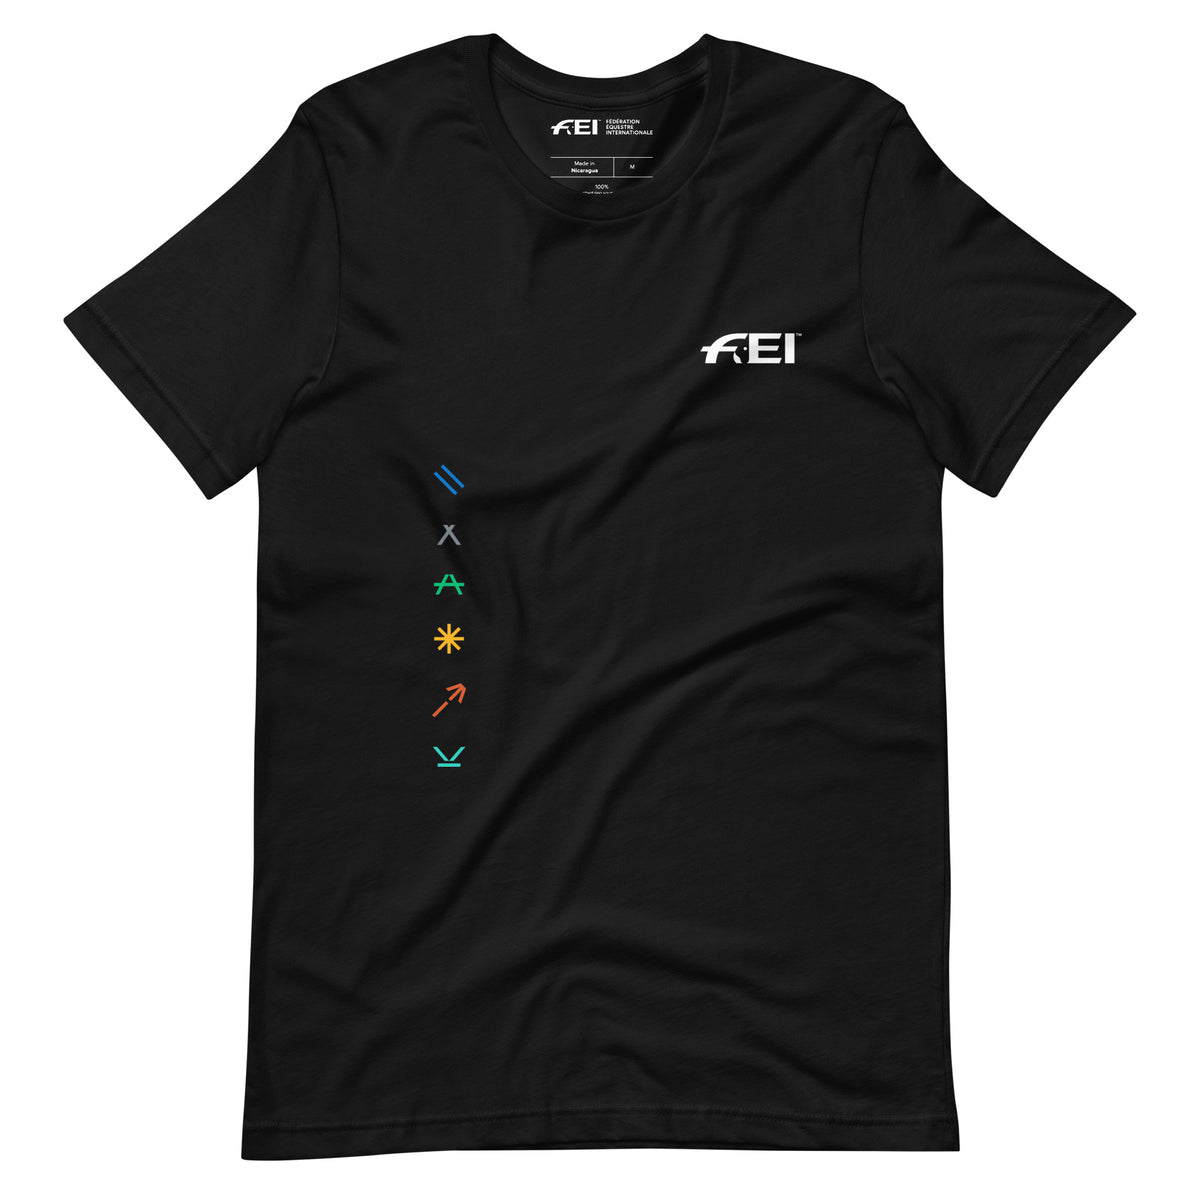 FEI Pictogram Unisex T-shirt